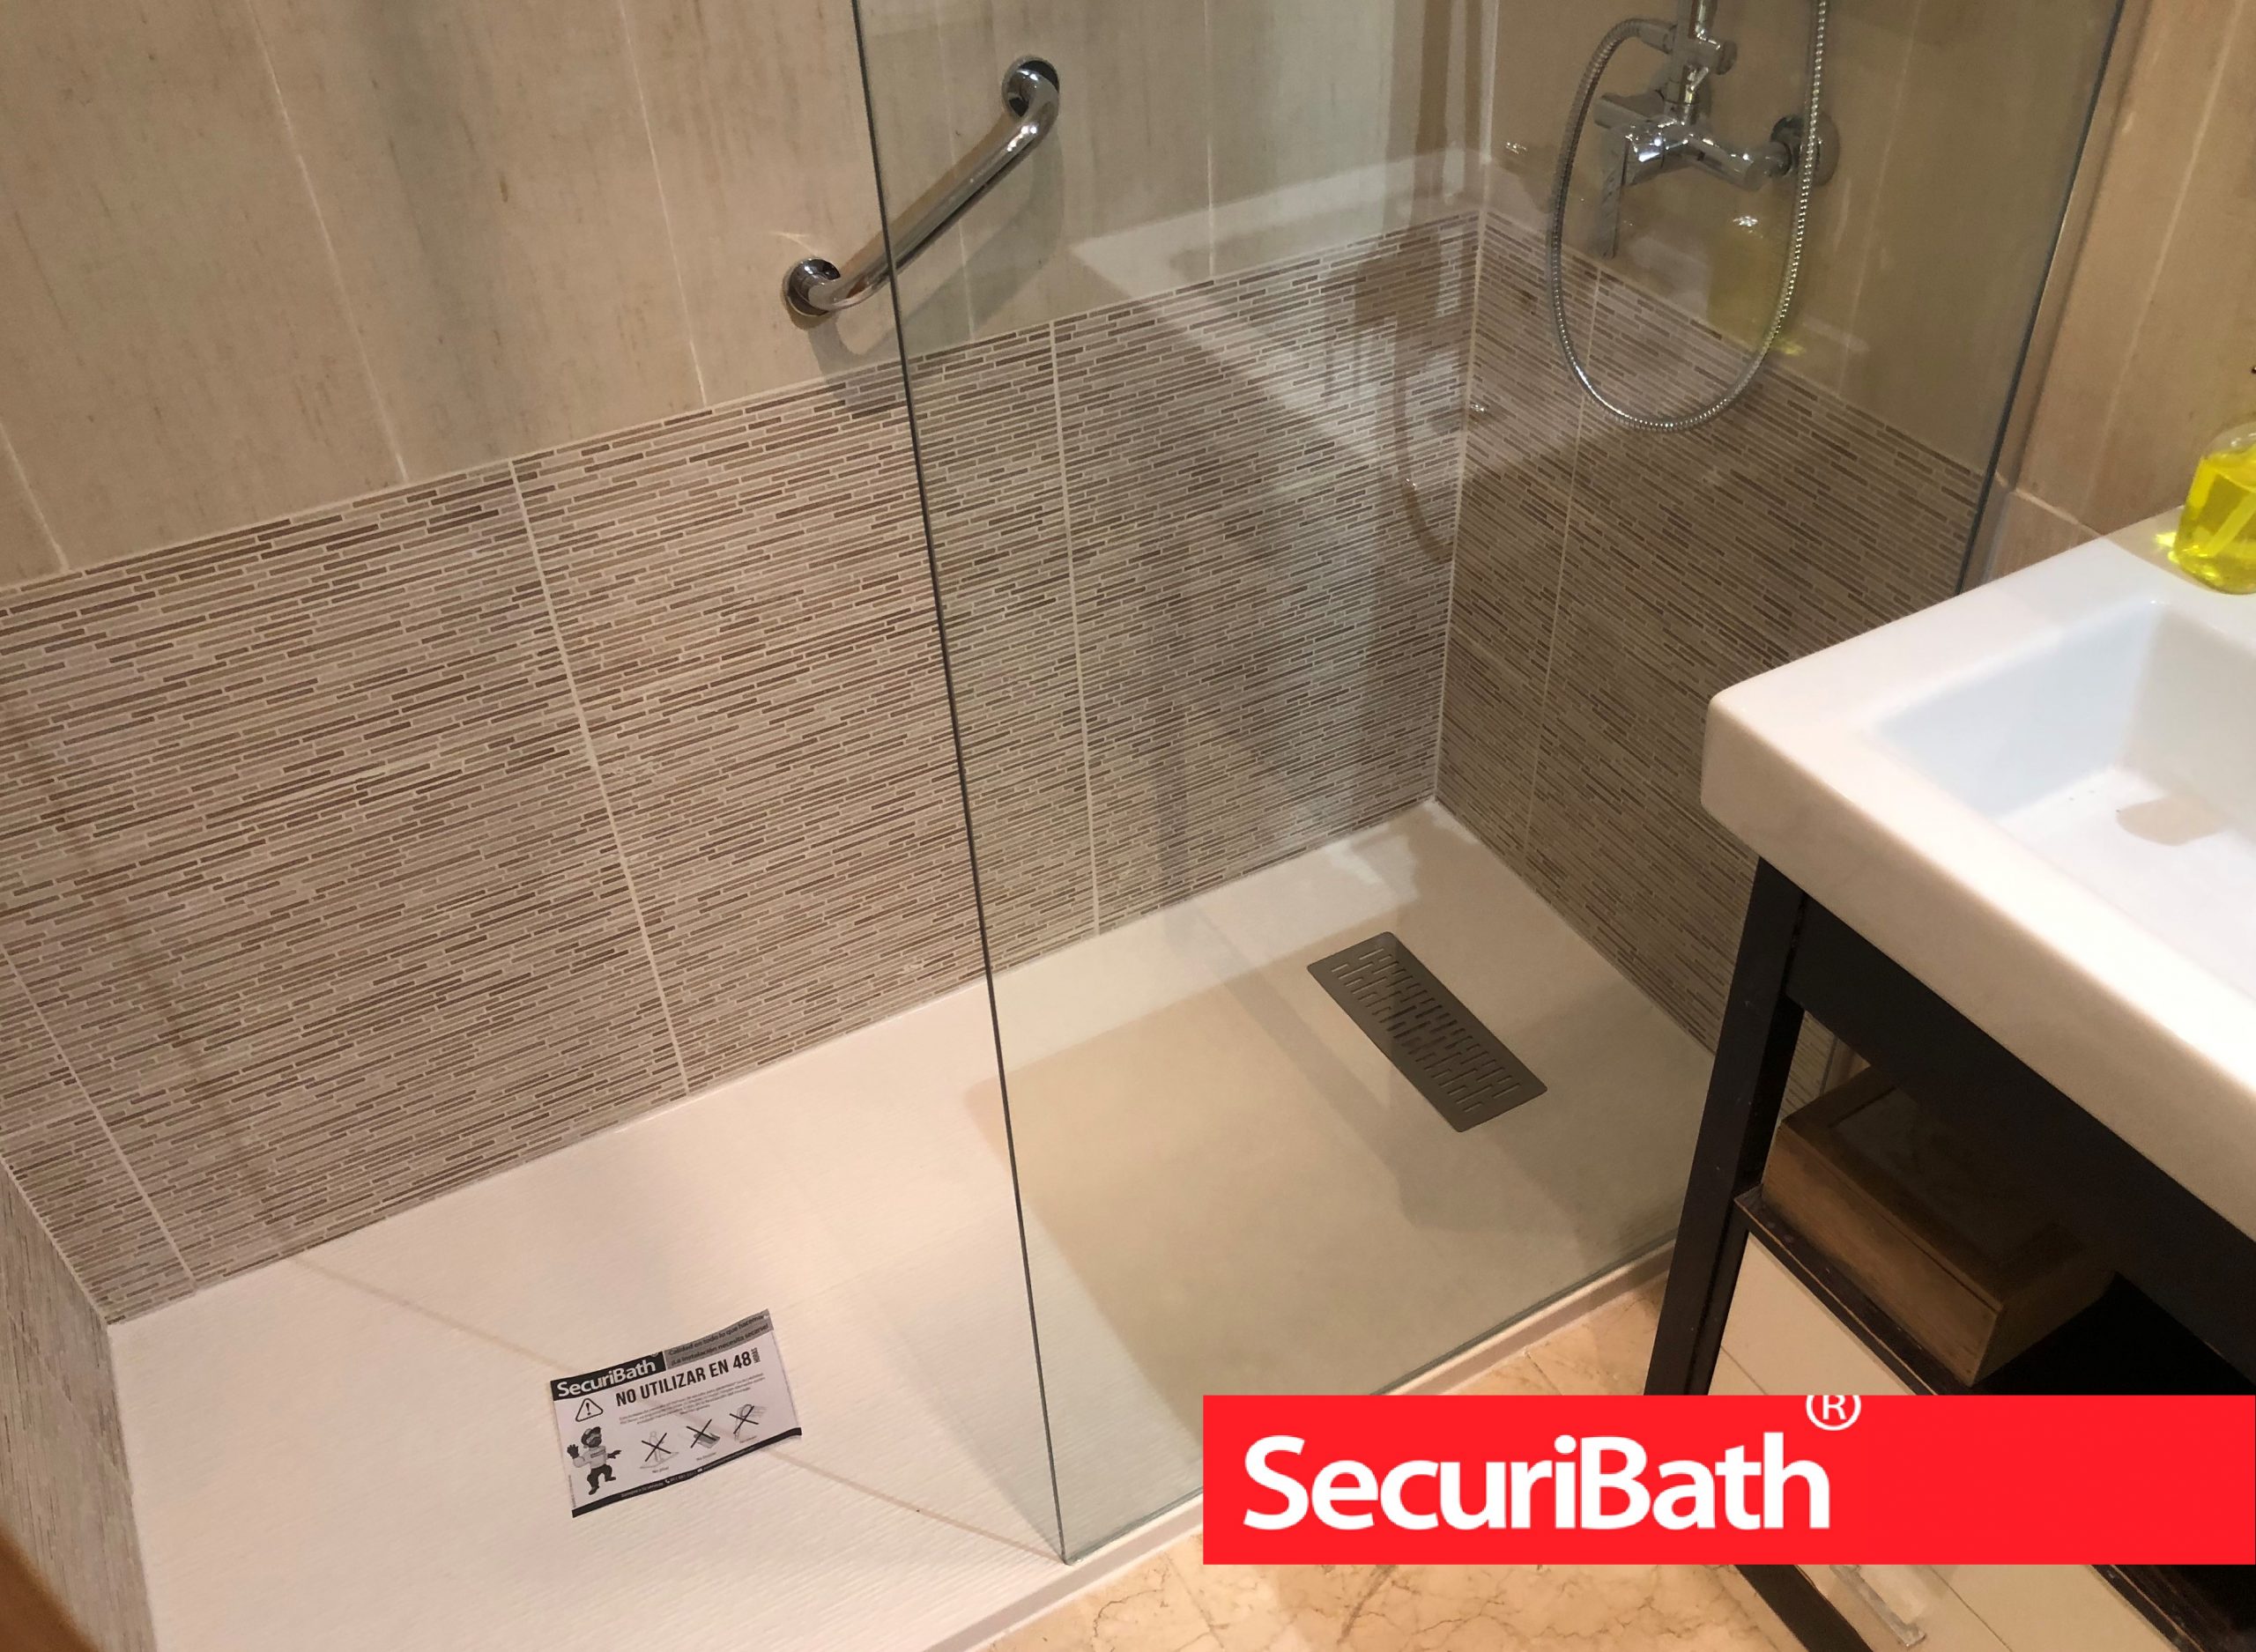 SecuriBath - Hornacinas en baños y duchas, para colocar los botes de gel,  champú y demás productos muy útil y elegante.